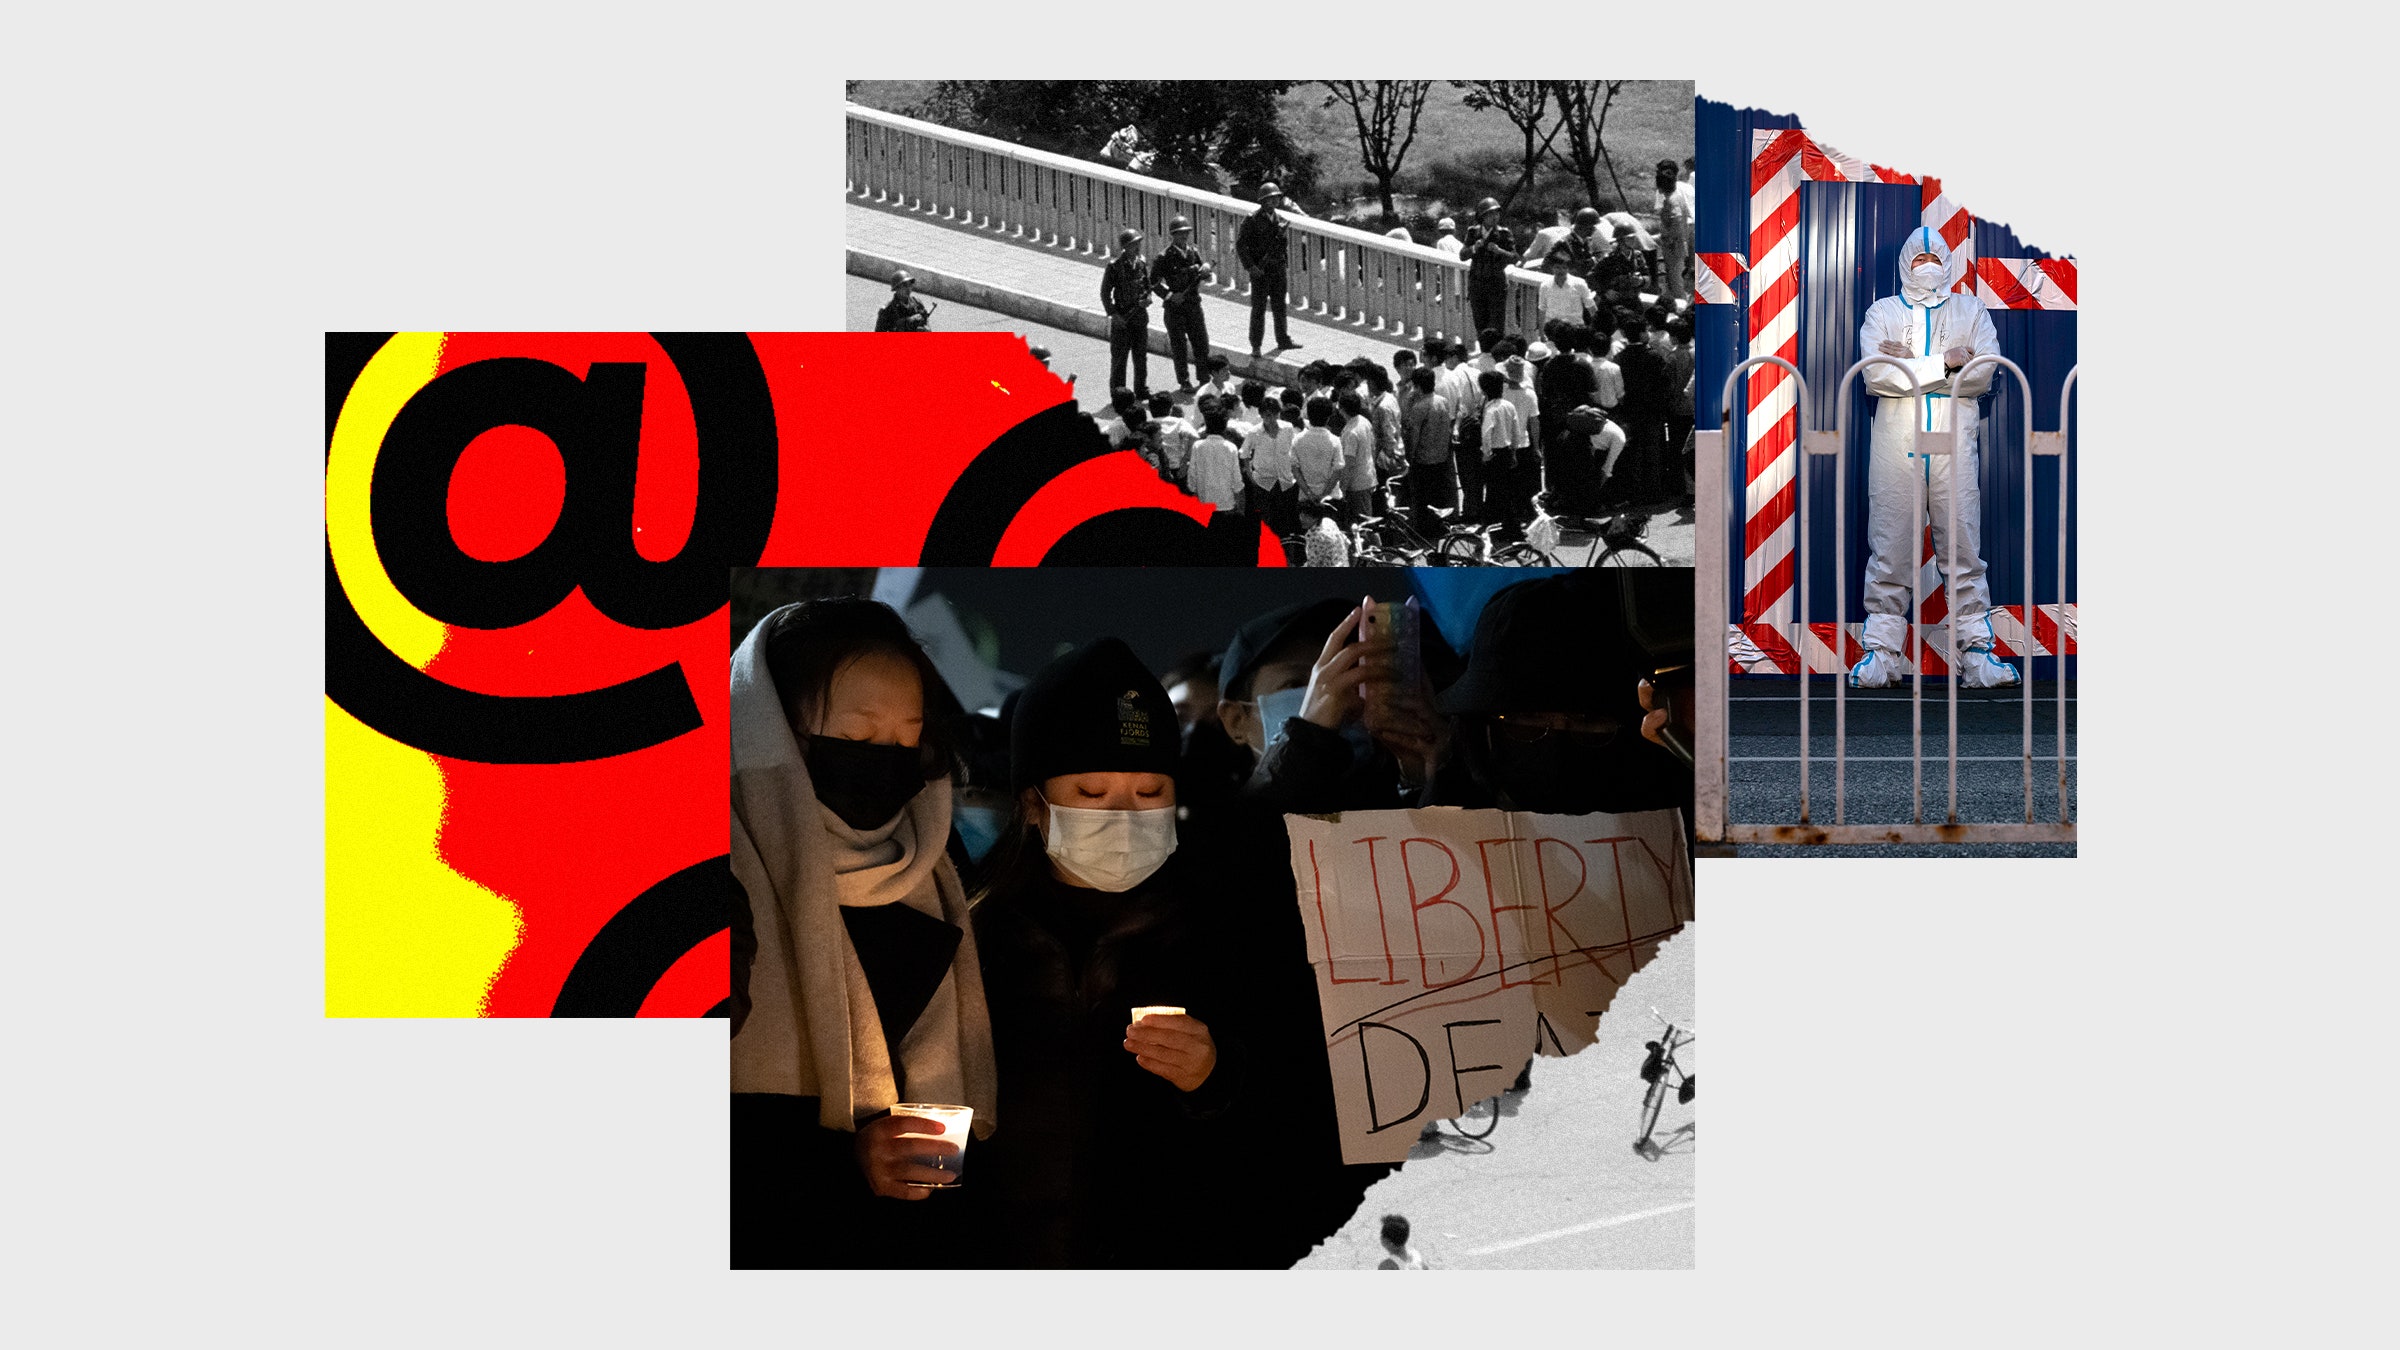 Colagem de fotos de manifestantes em manifestantes de Nova York na praça Tiananman em um risco e símbolos biológicos